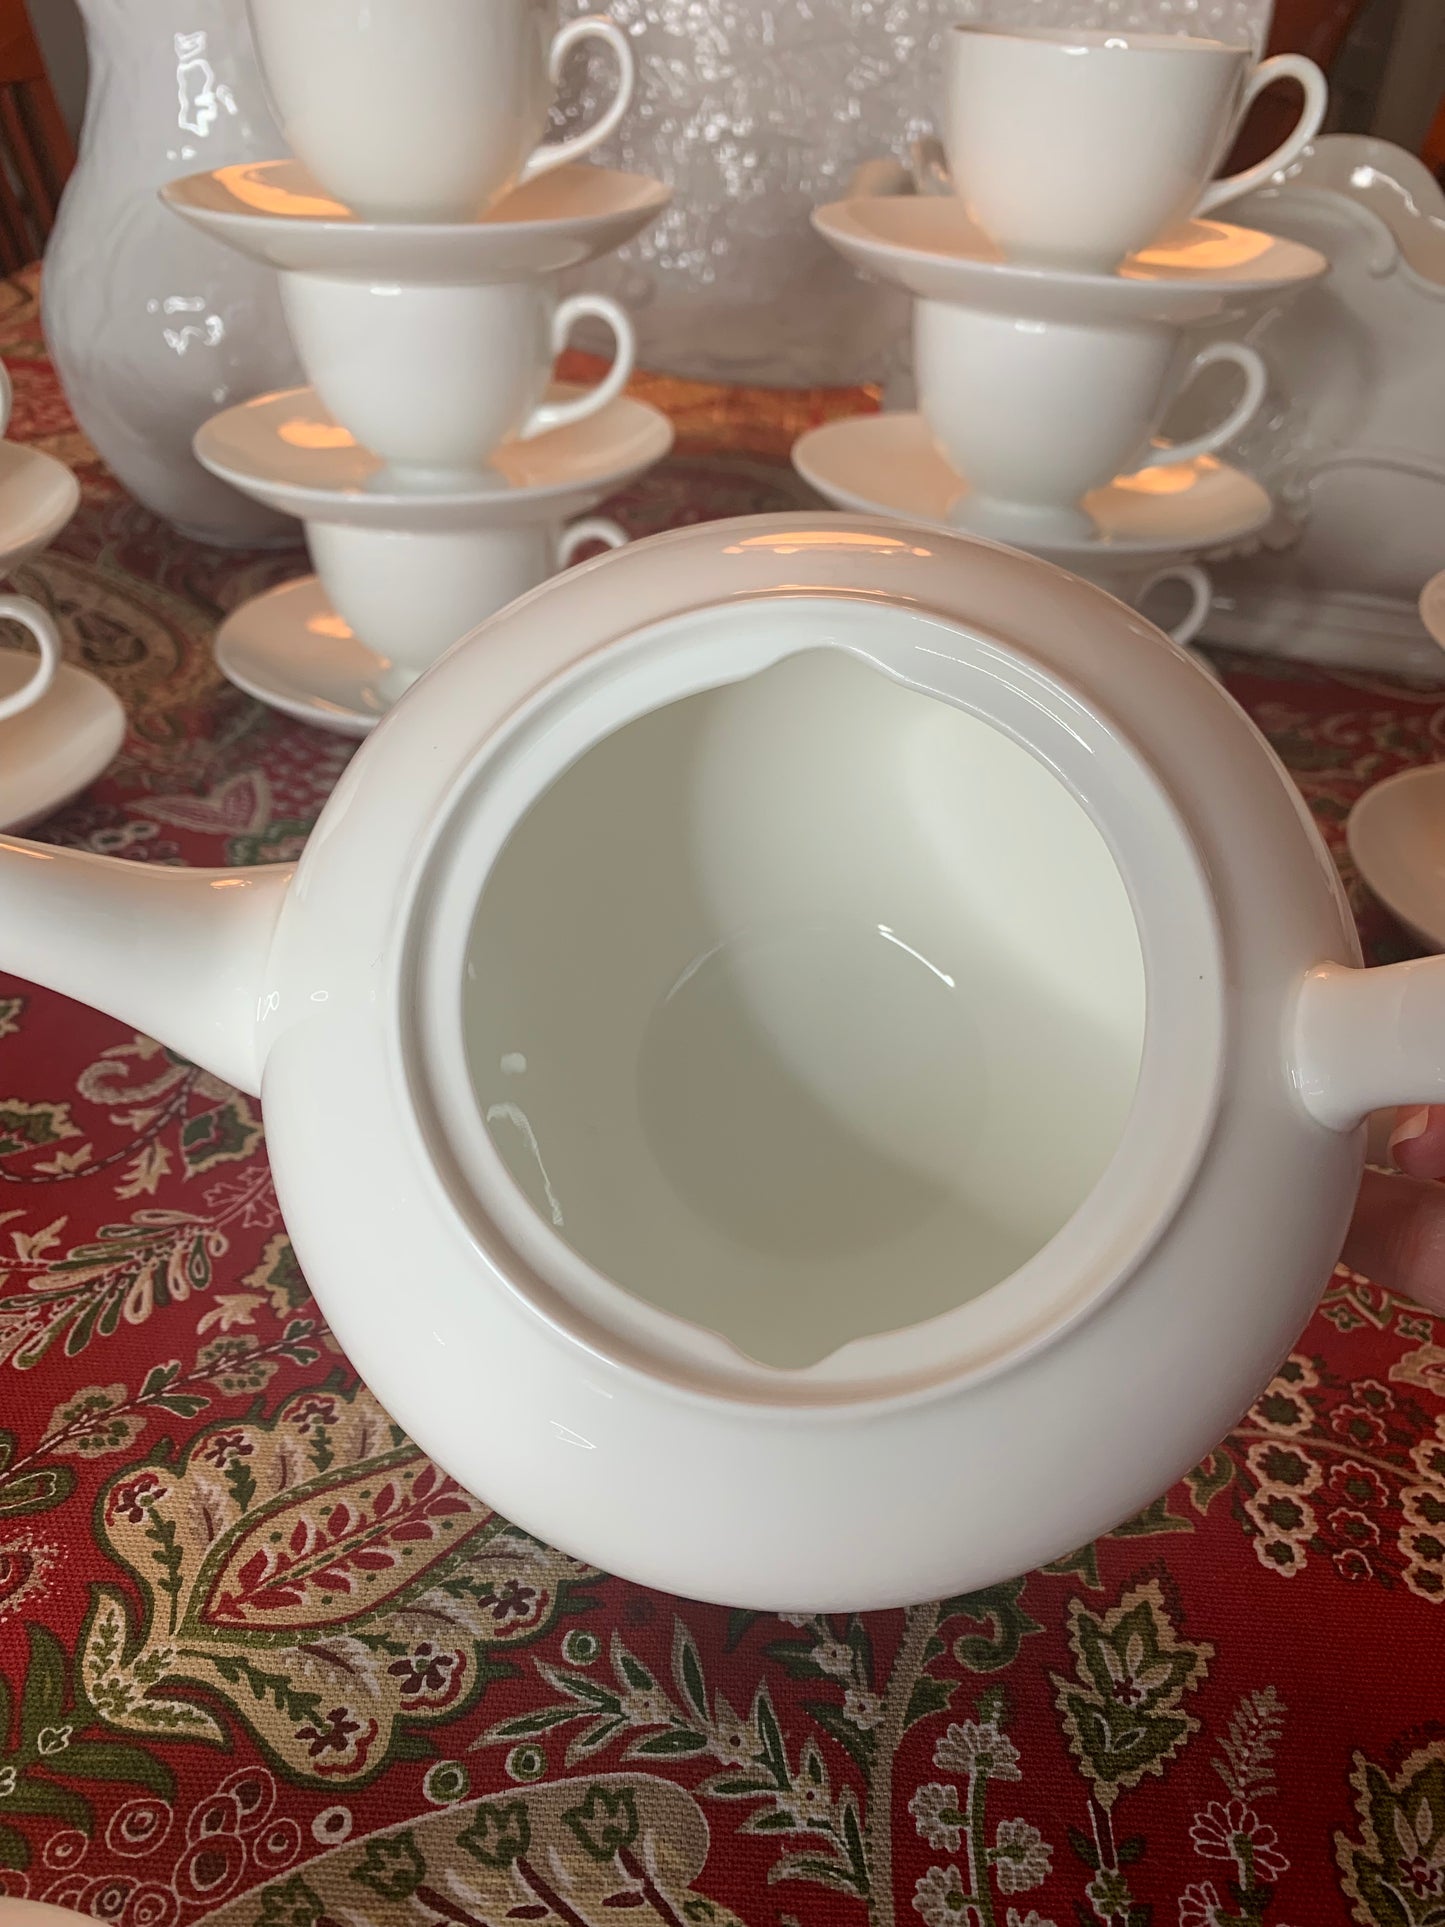 Wedgewood Tea set in Wedgewood White (Bone)